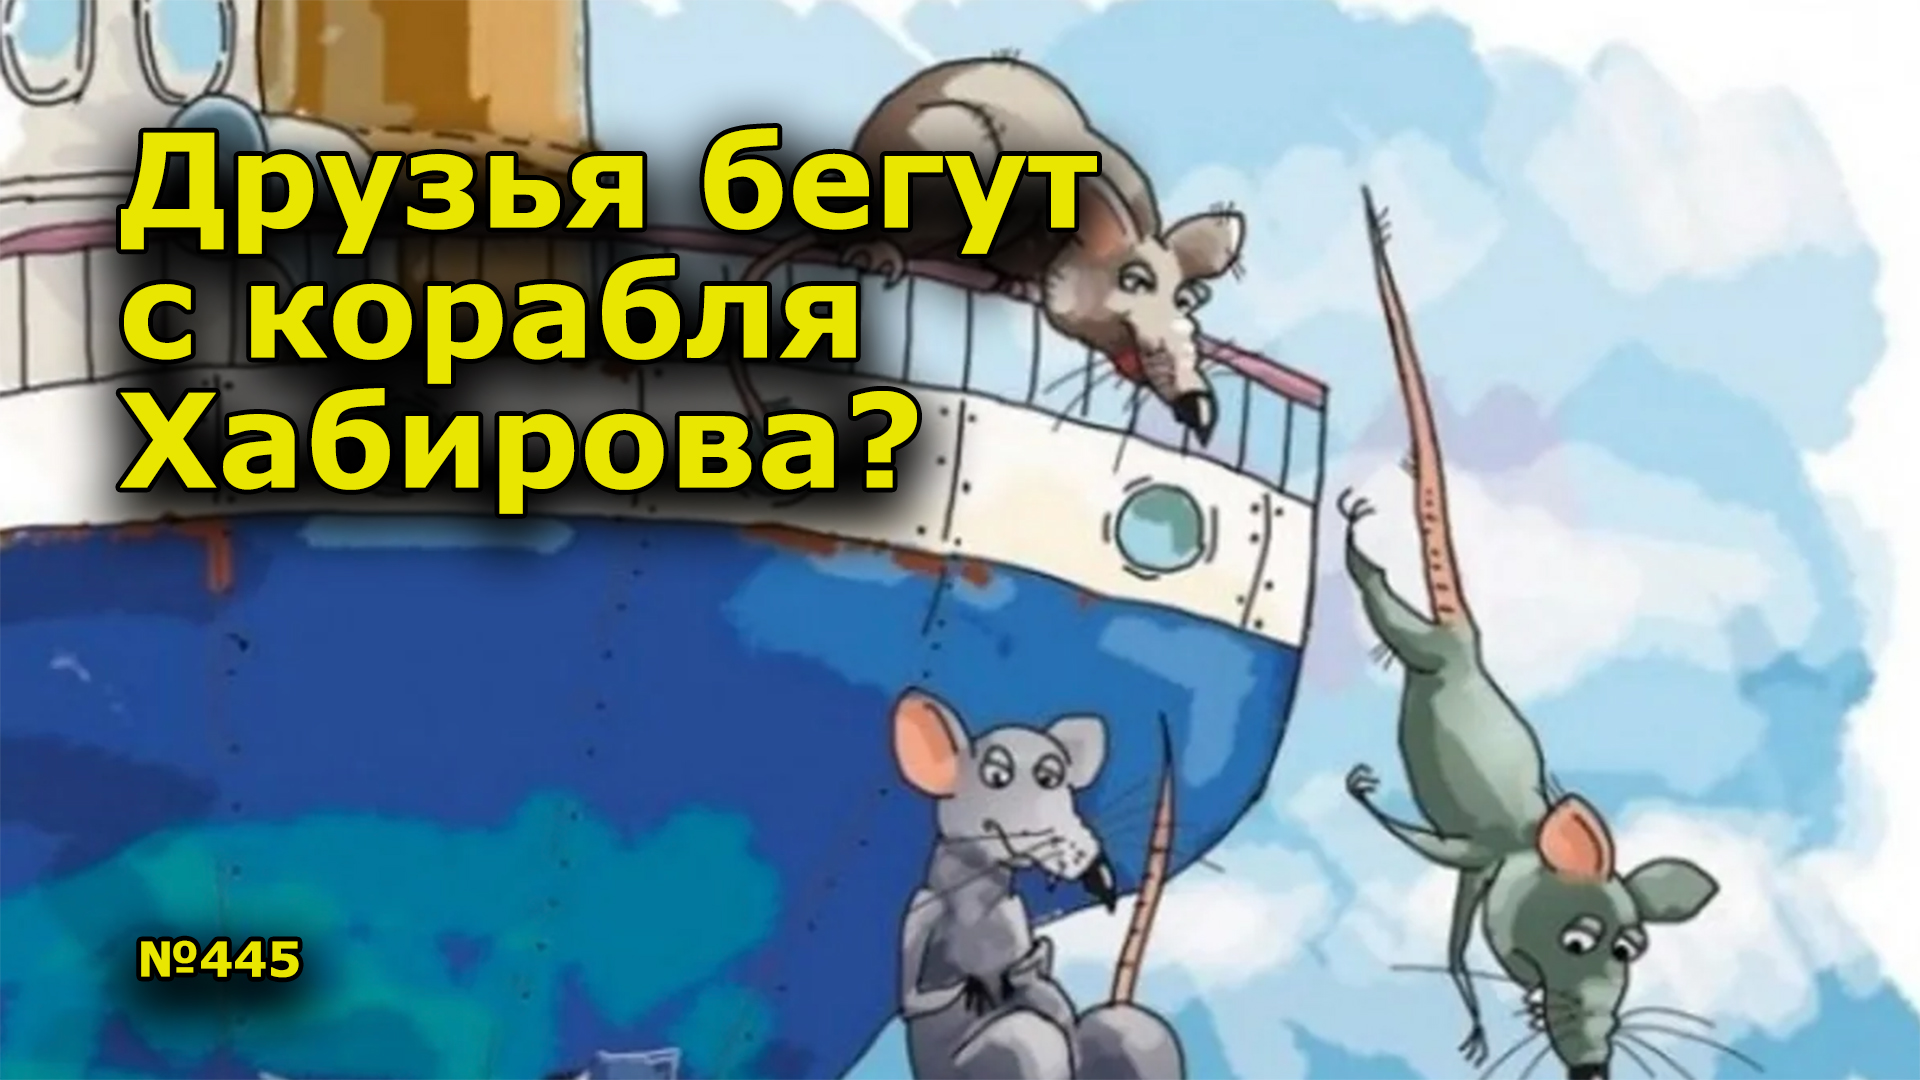 Беги другу беги песня. Крысы бегут с корабля на другой корабль. Сережа Марков пересмотрел свои убеждения .крысы бегут с корабля.